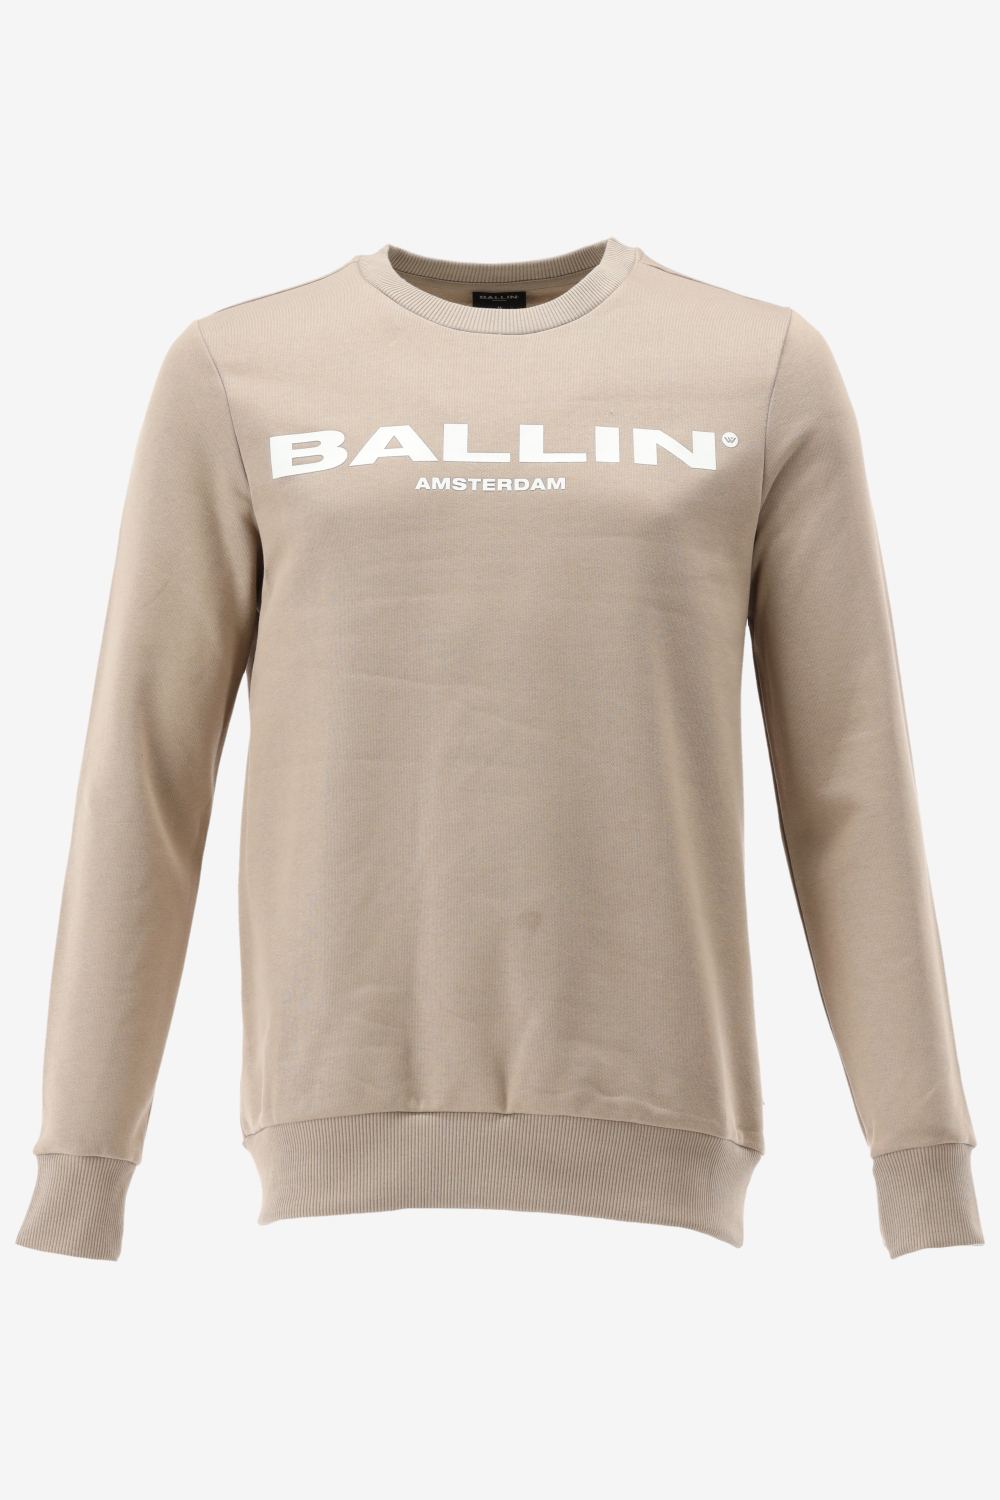 Ballin Amsterdam -  Heren Slim Fit  Original Sweater  - Bruin - Maat XS